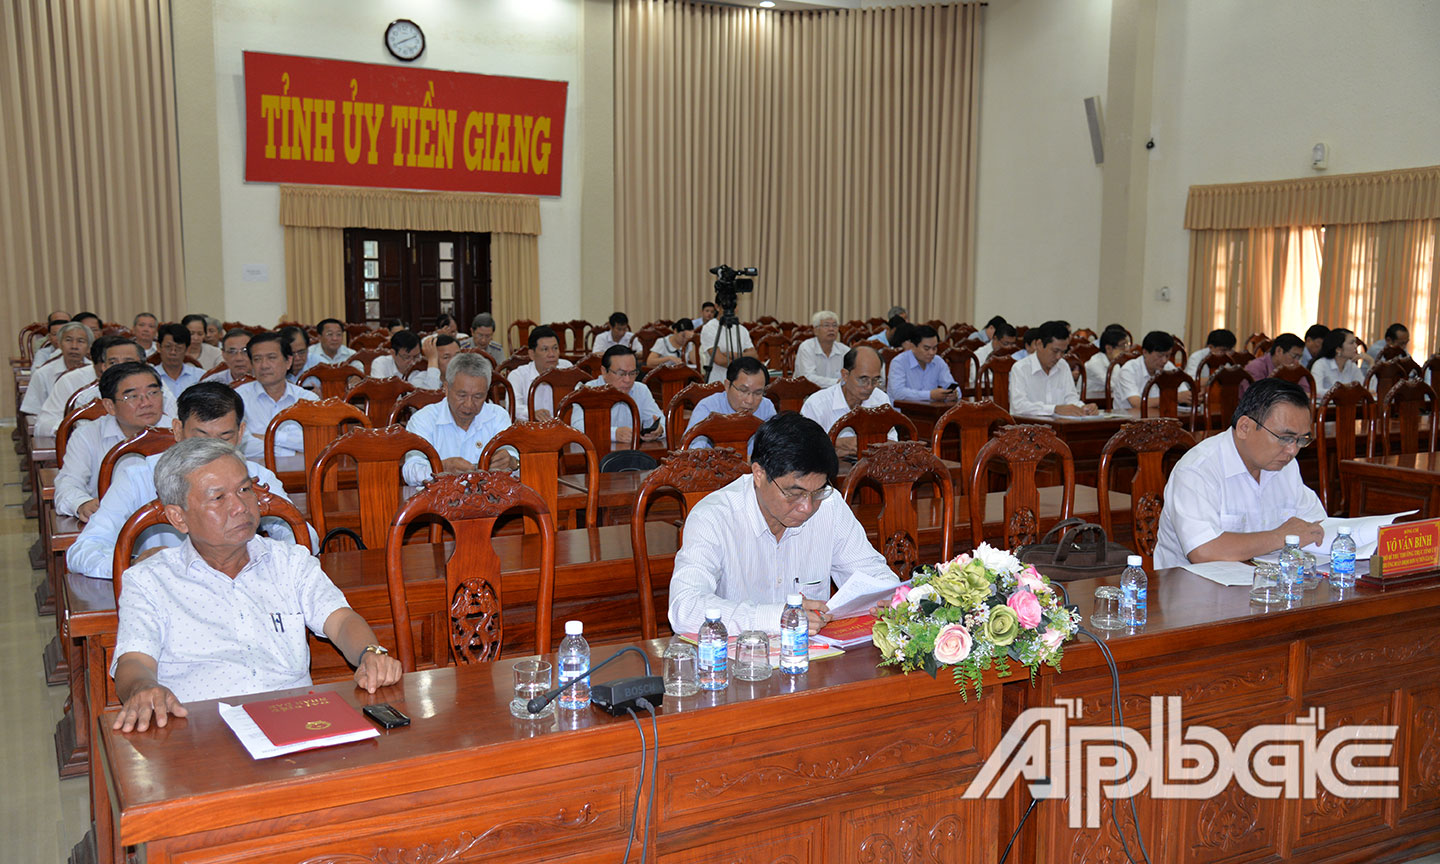 Các đại biểu tại điểm cầu Tỉnh ủy Tiền Giang tập trung theo dõi Hội nghị trực tuyến chủ đề năm 2019.               Ảnh: HẠNH NGA